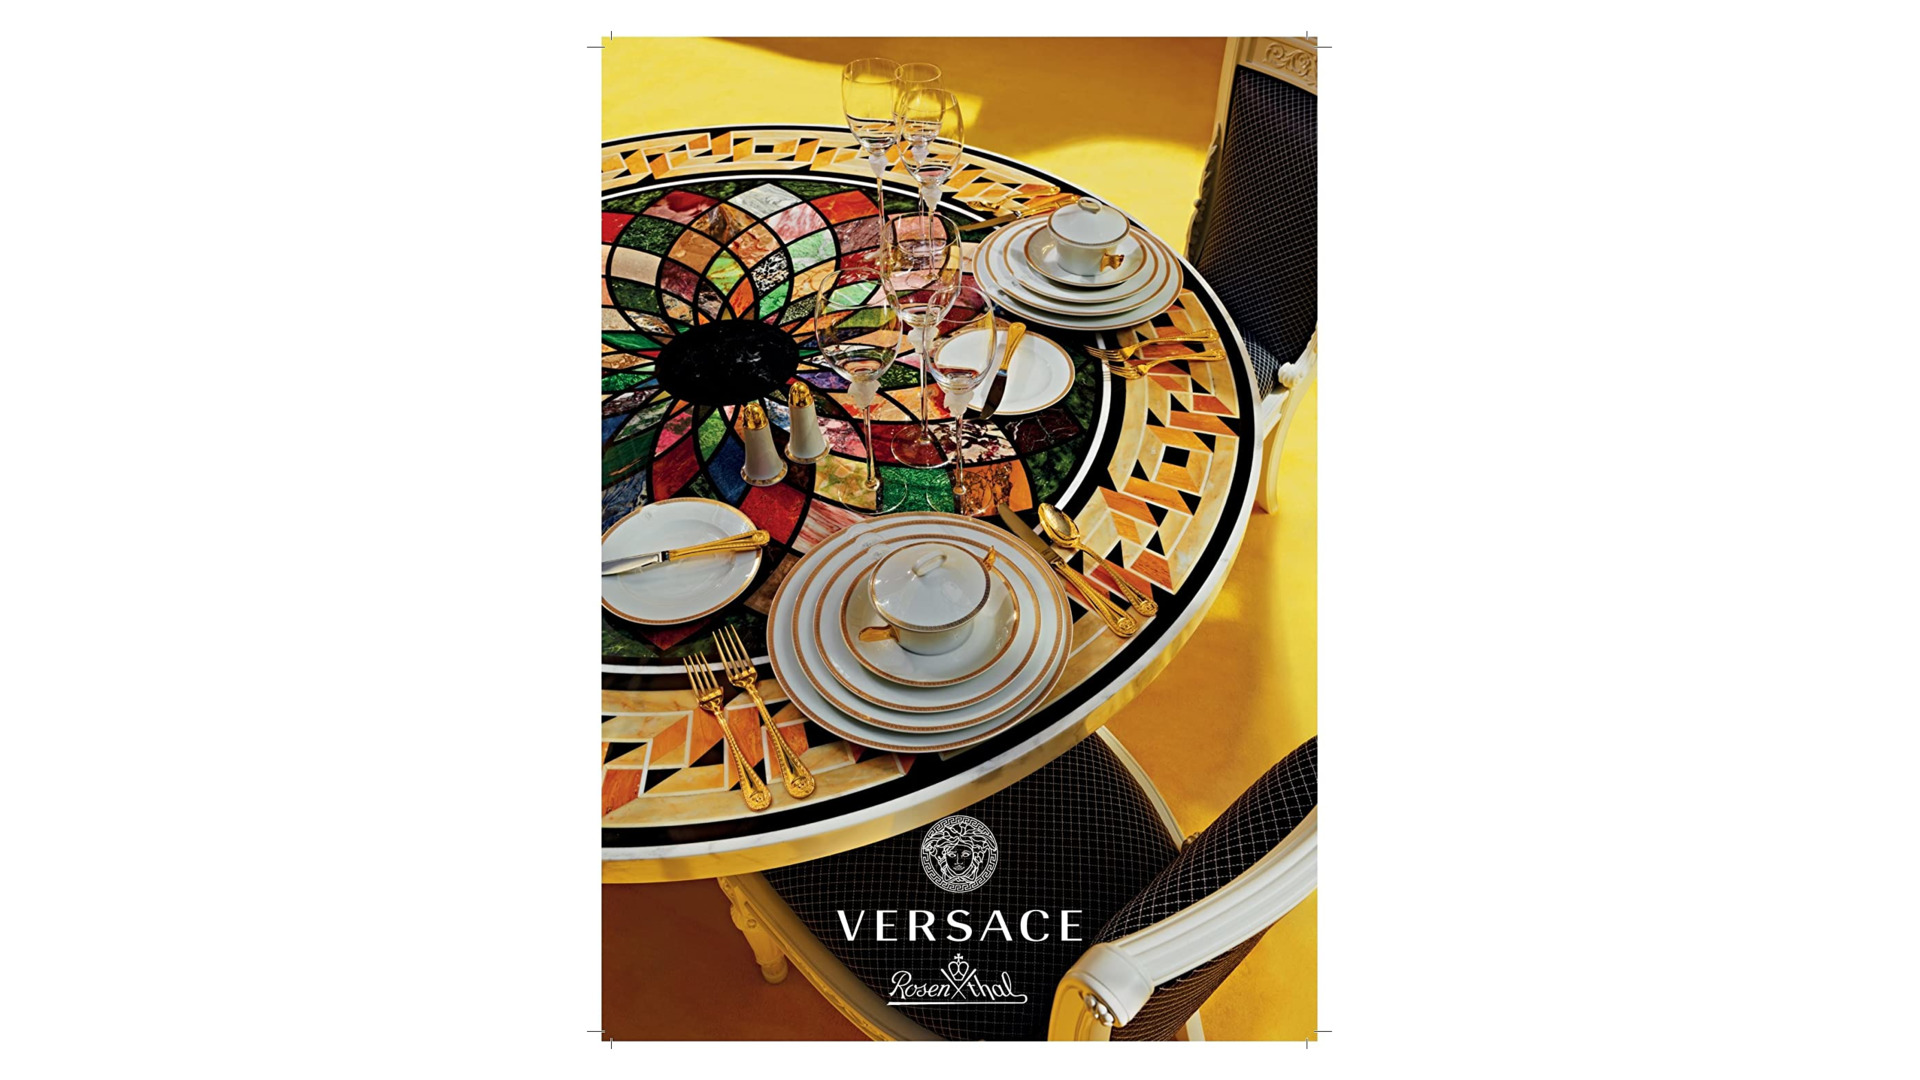 Чашка суповая с блюдцем Rosenthal Versace Золотой меандр 300 мл, фарфор